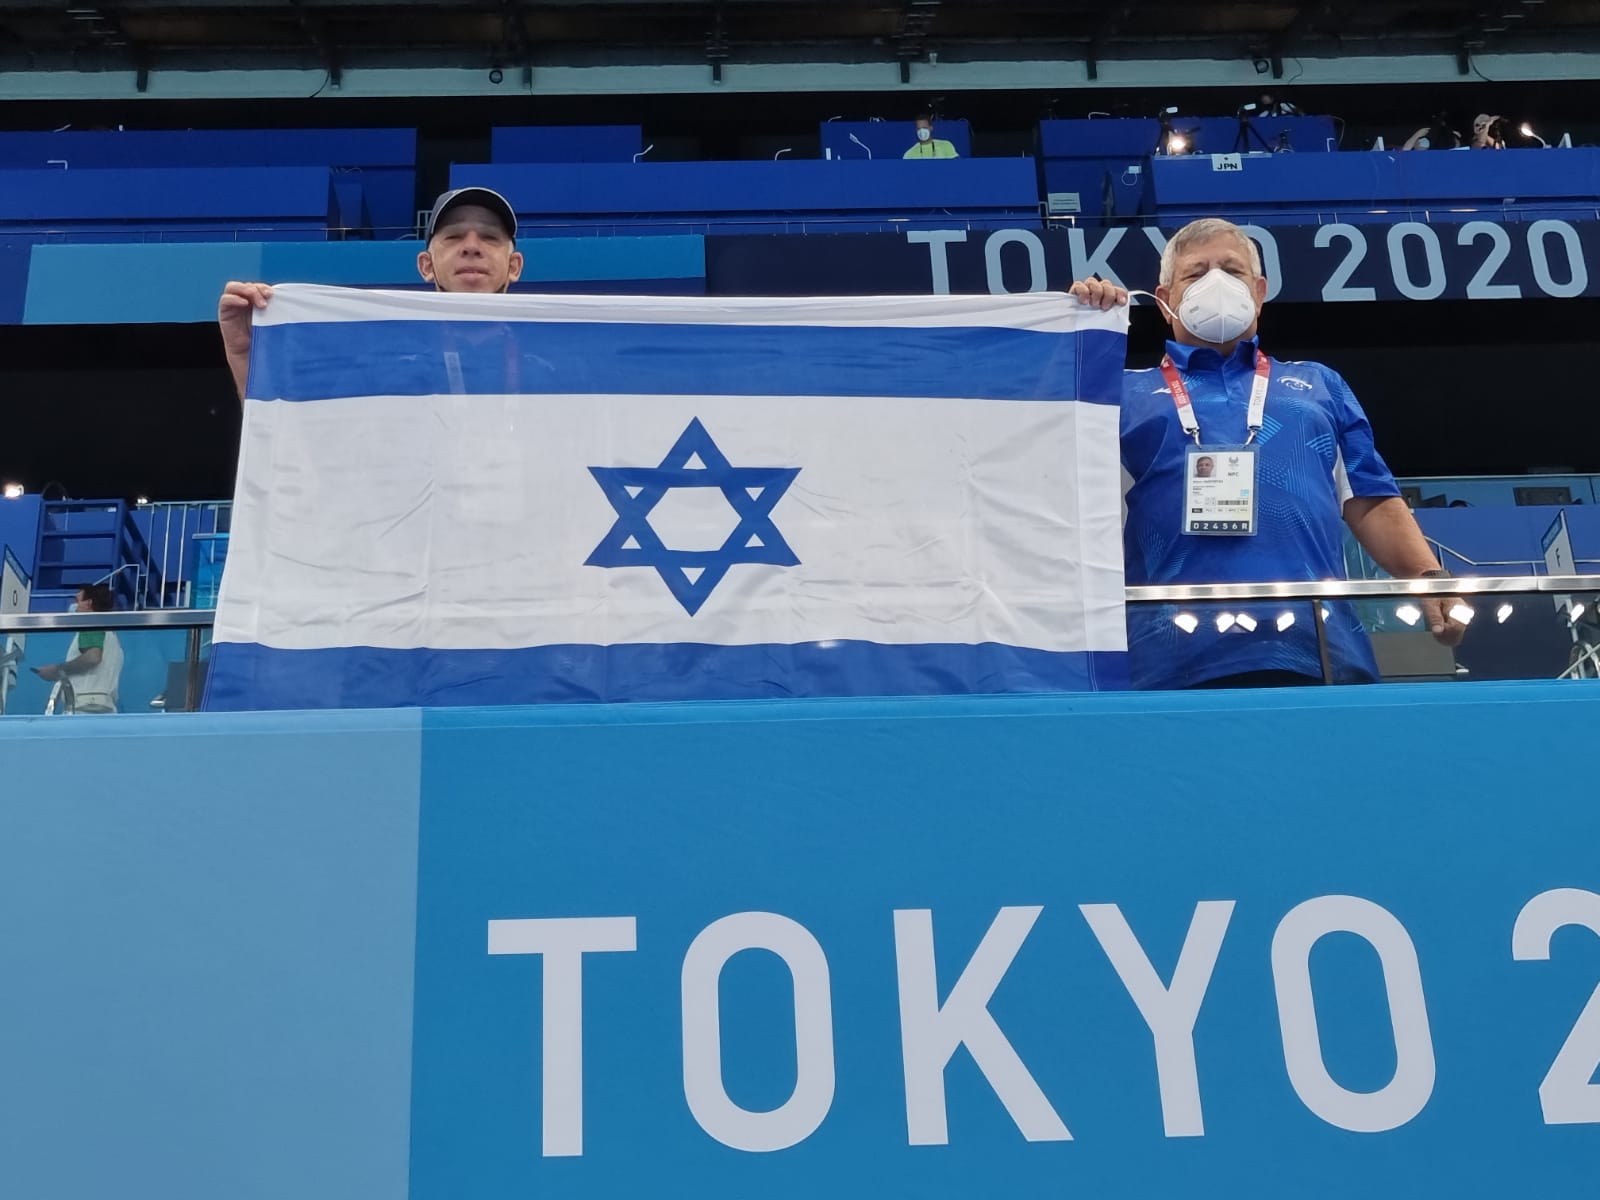 מניף בגאווה את דגל ישראל באולימפיאדת טוקיו (צילום: באדיבות ניסים סספורטס)